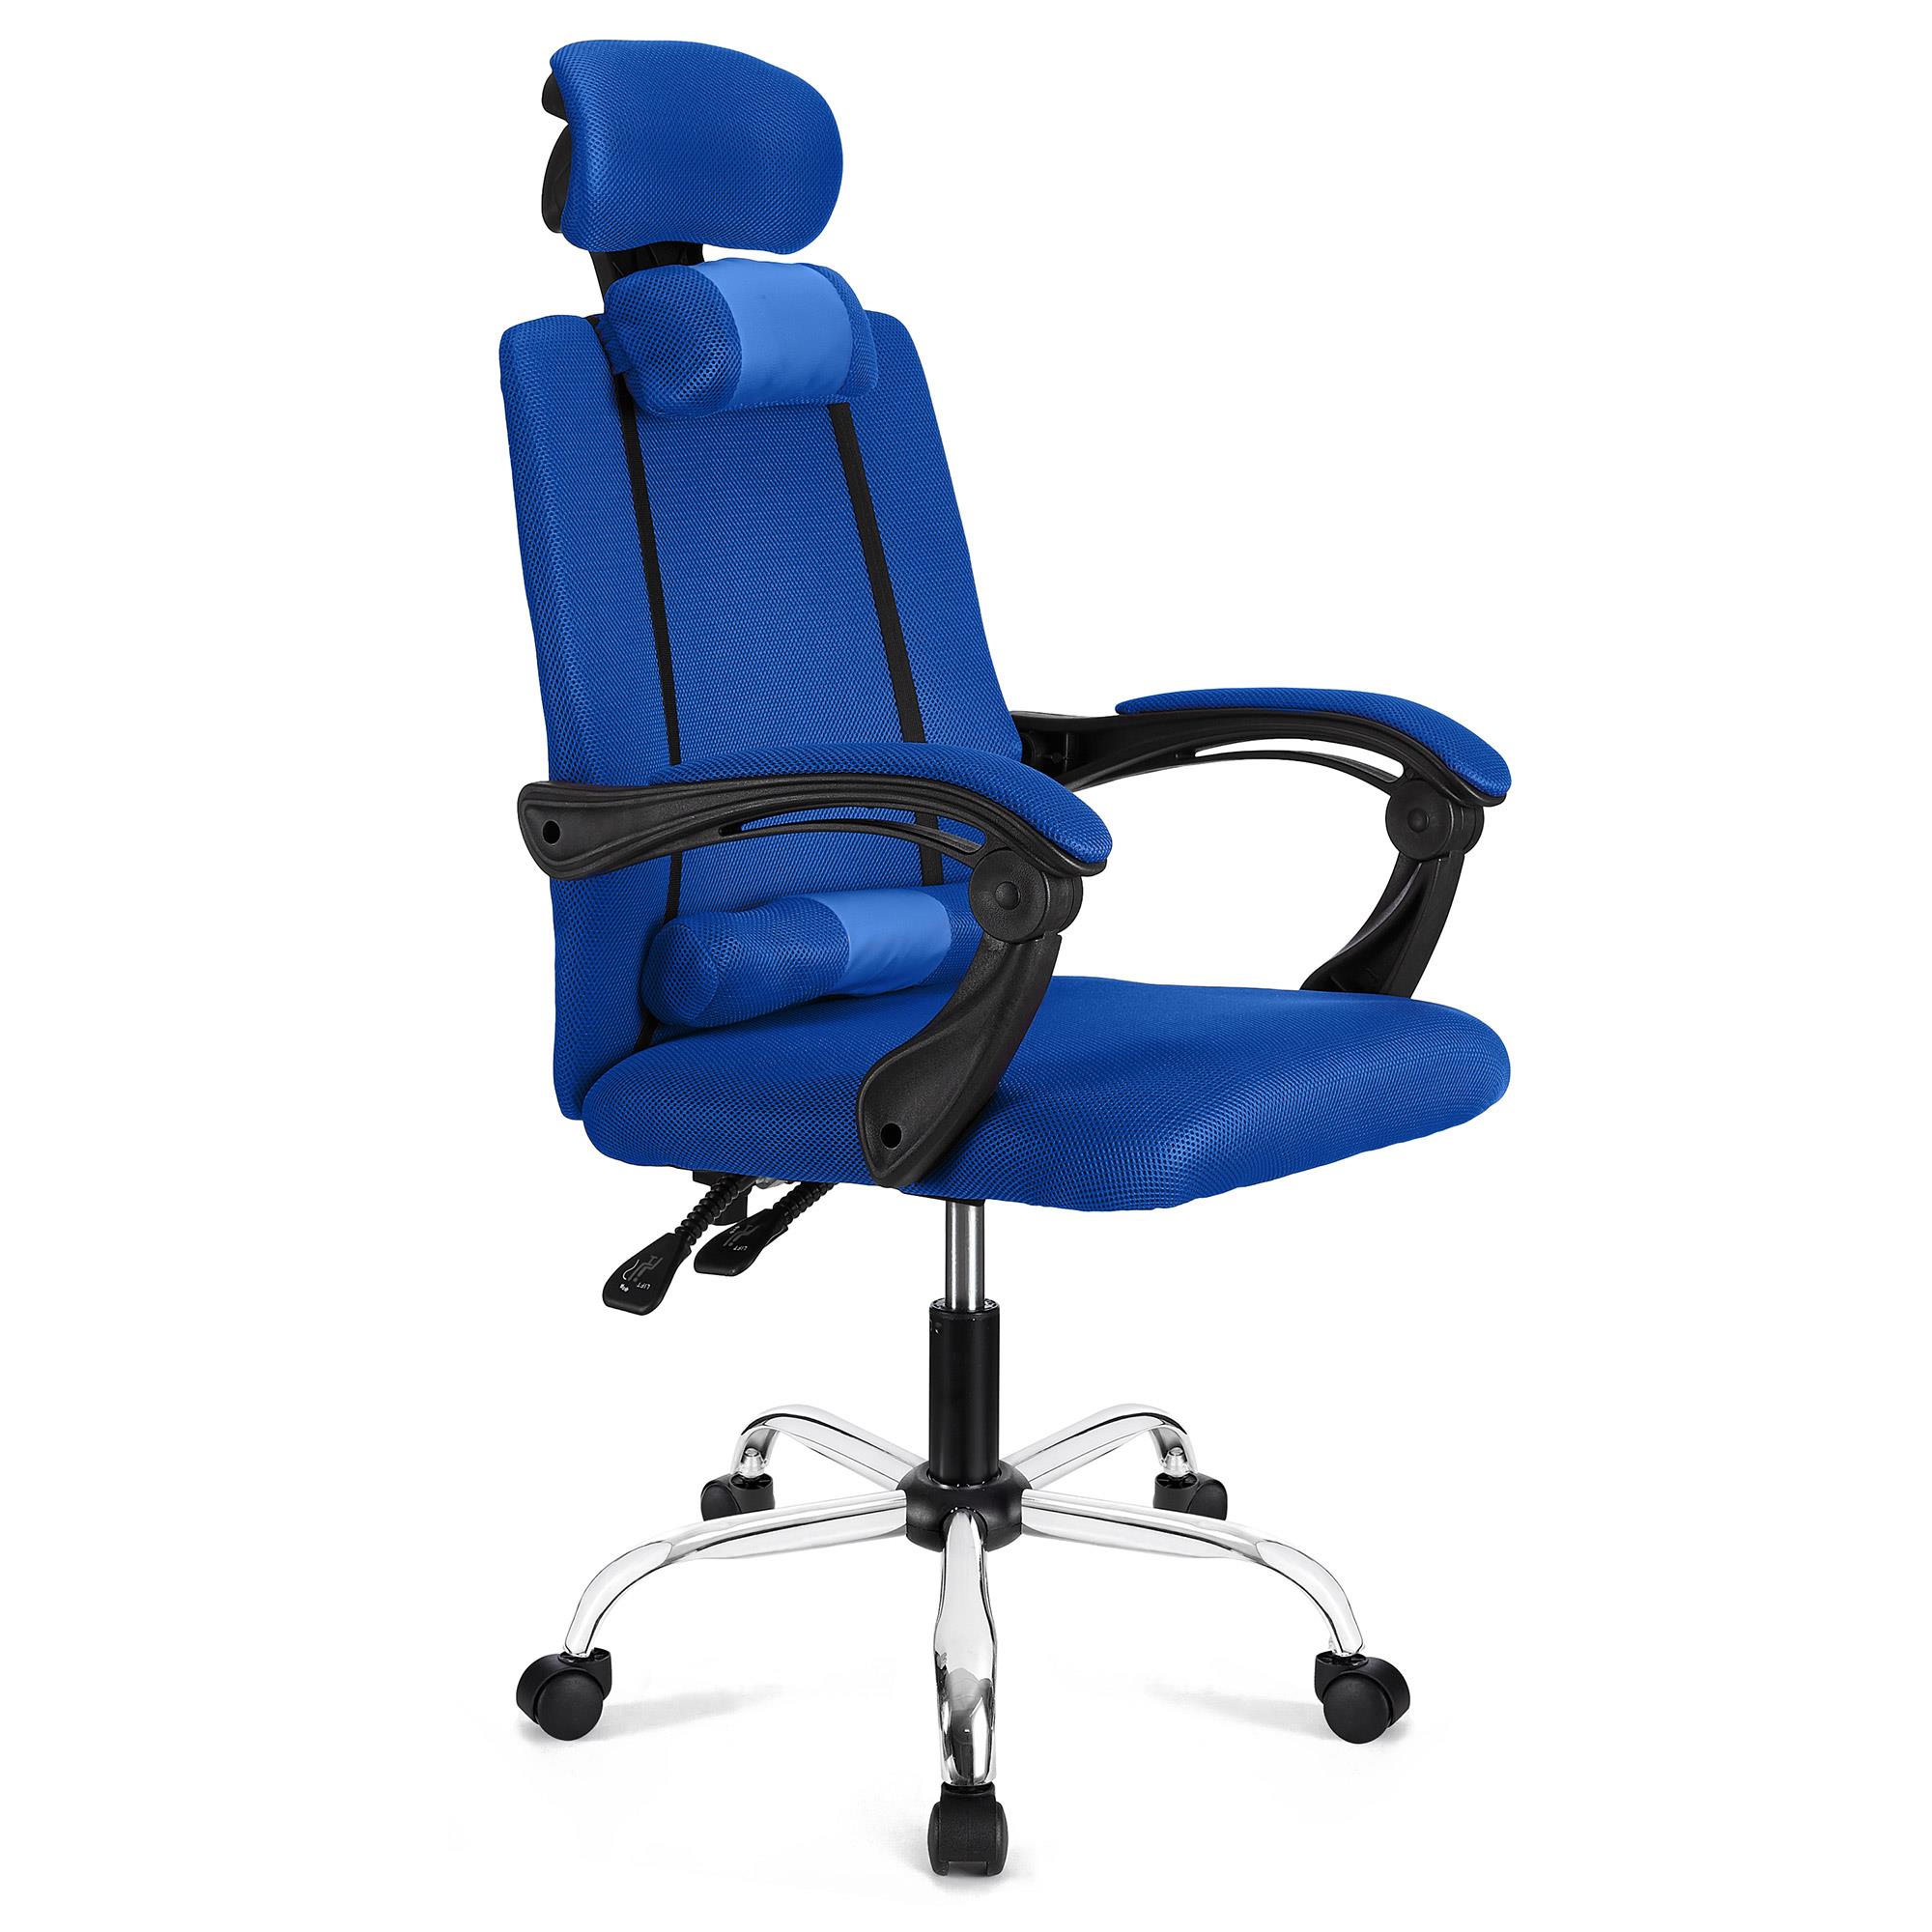 Chaise Ergonomique FABIO, inclinable, avec coussins, en Maille Respirable, Bleu